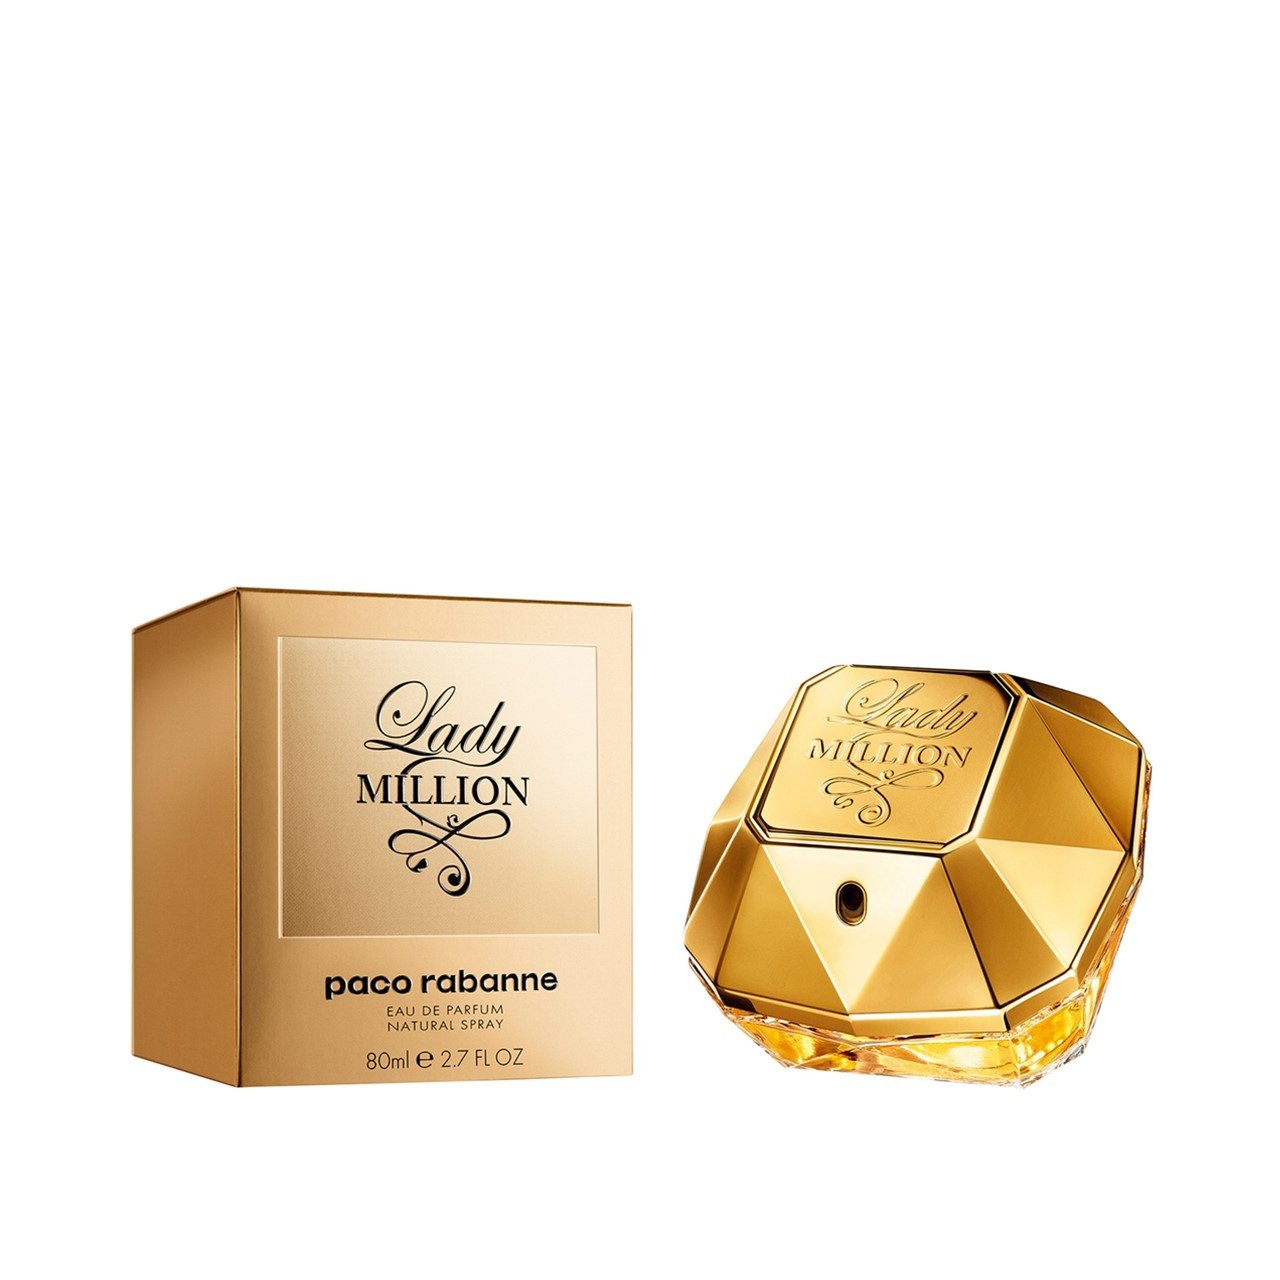 Paco Rabanne Lady Million Eau de Parfum 80ml (2.7fl oz)